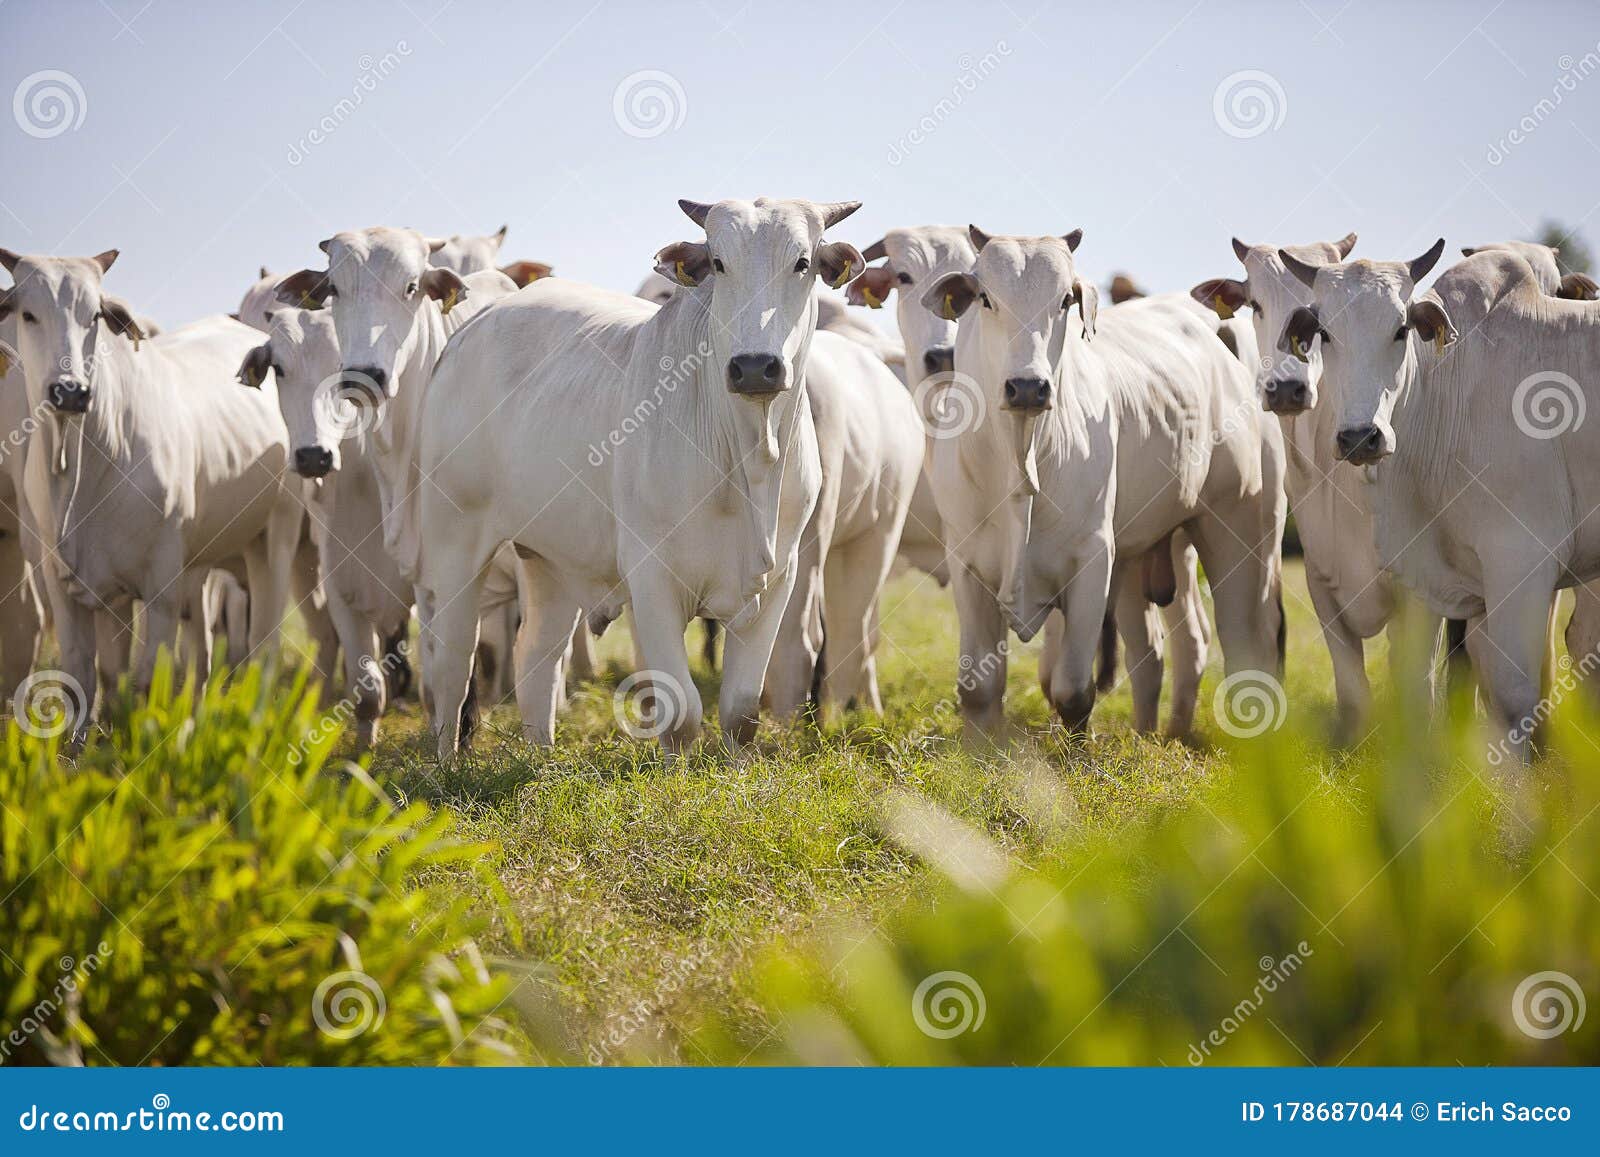 nellore cattle grazing in the field at sunset, mato grosso do sul, brazil